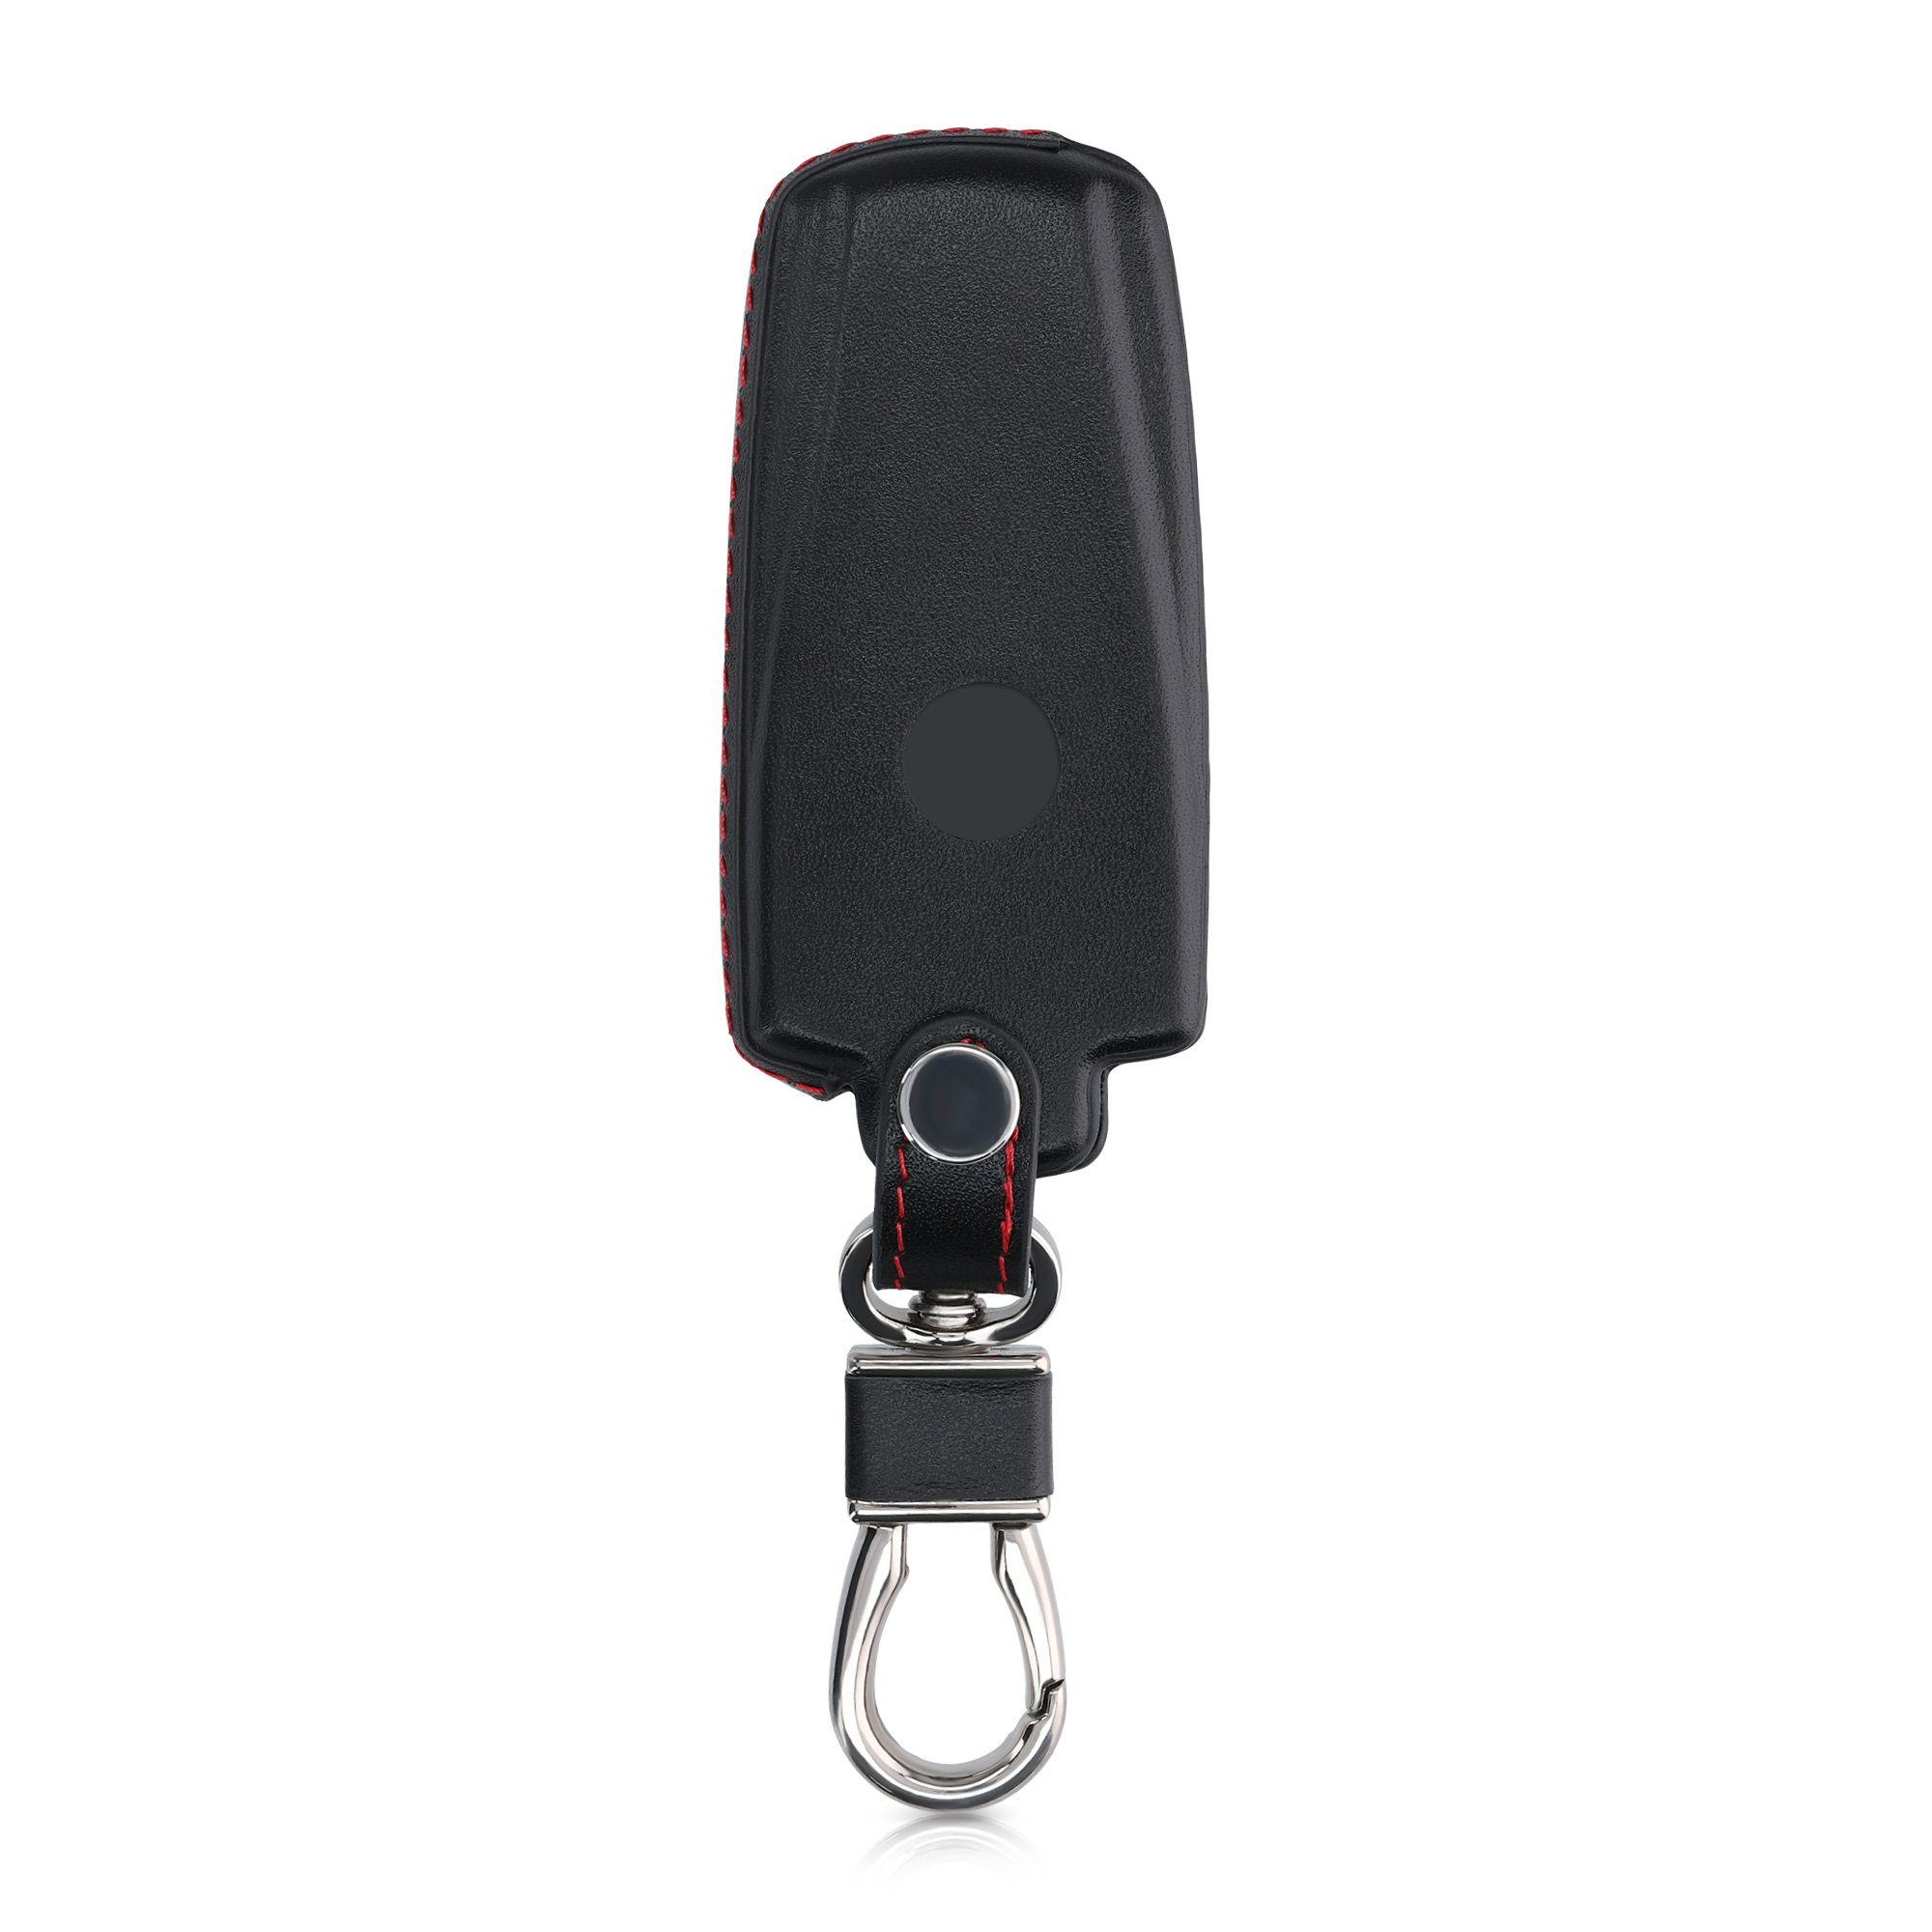 Smartkey kwmobile VW Autoschlüssel Leder Schlüsseltasche Schutzhülle Autoschlüssel, Schlüsselhülle - für Cover Hülle 3-Tasten Schlüssel Case